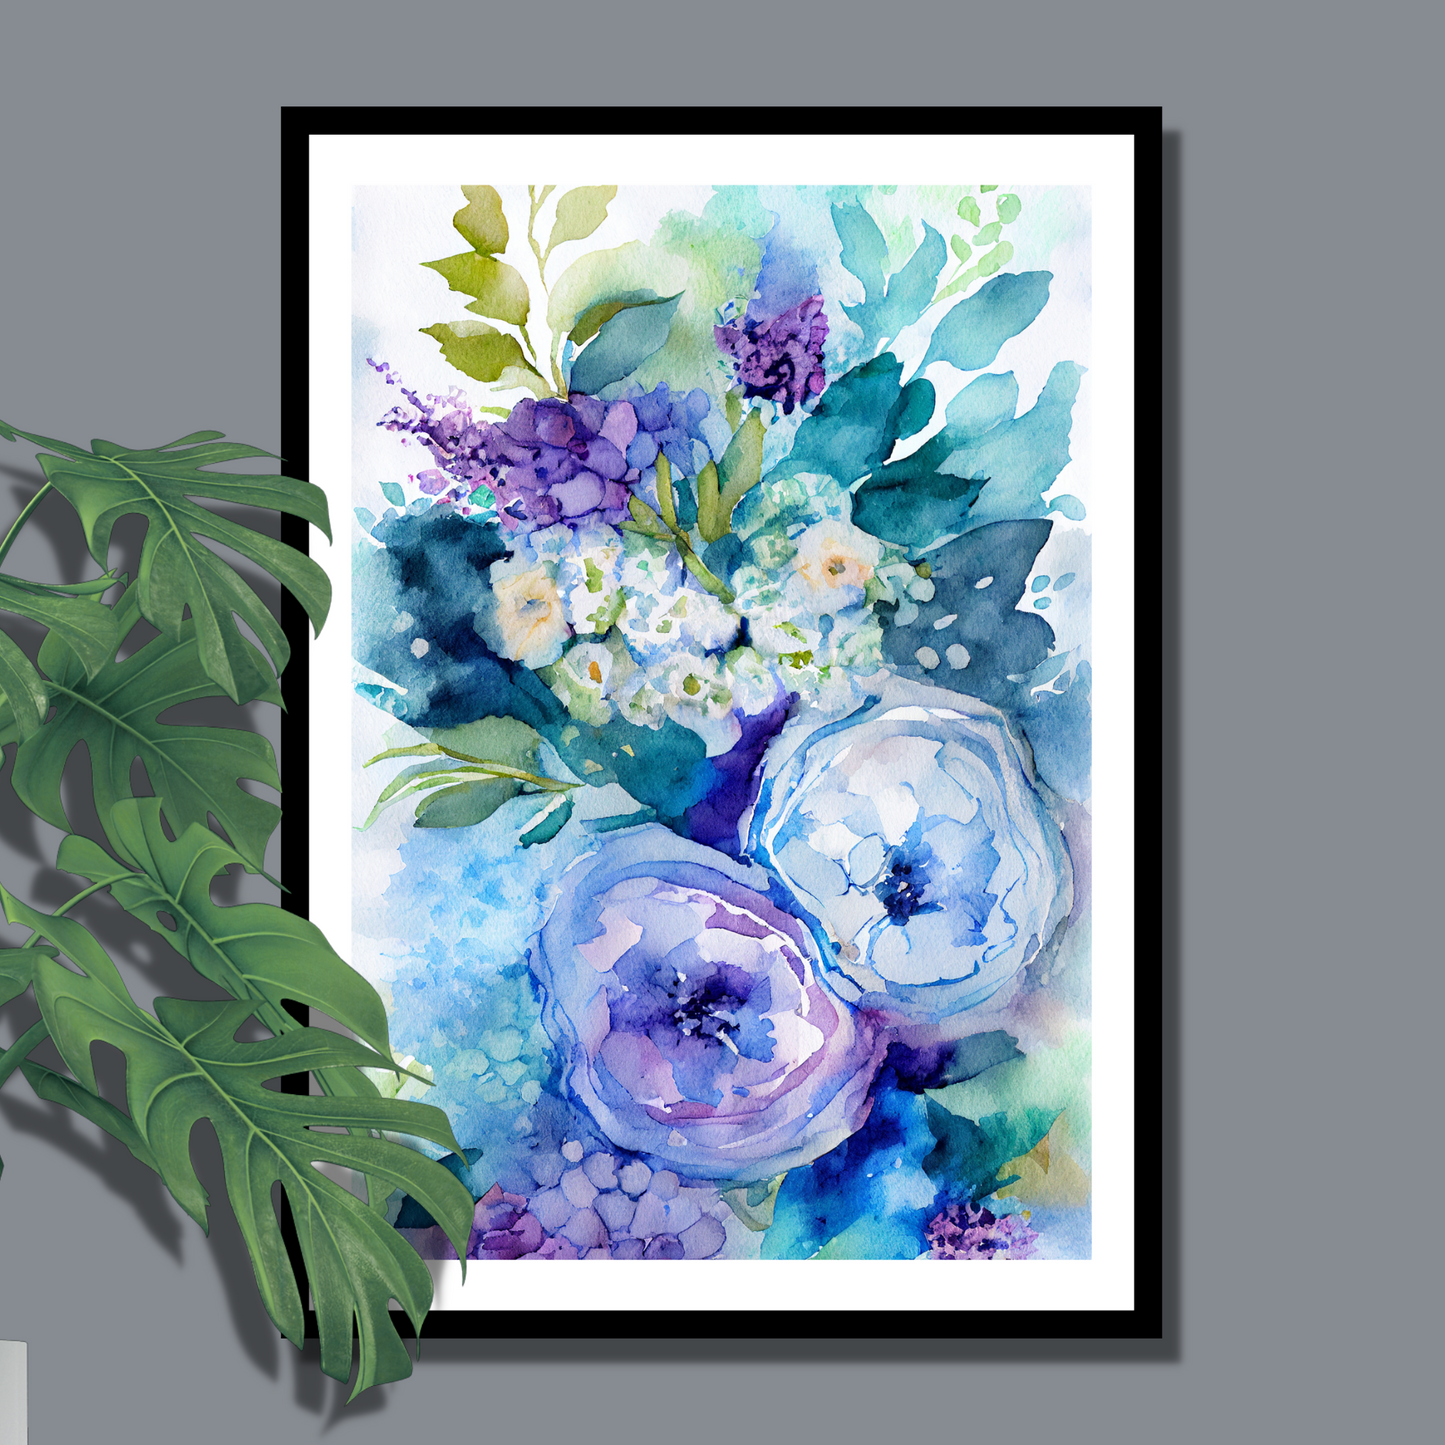 Blomstermotiv i vannfarger i nyanser grønn, beige, blå og lilla. Plakaten har hvit dekorativ kant rundt.